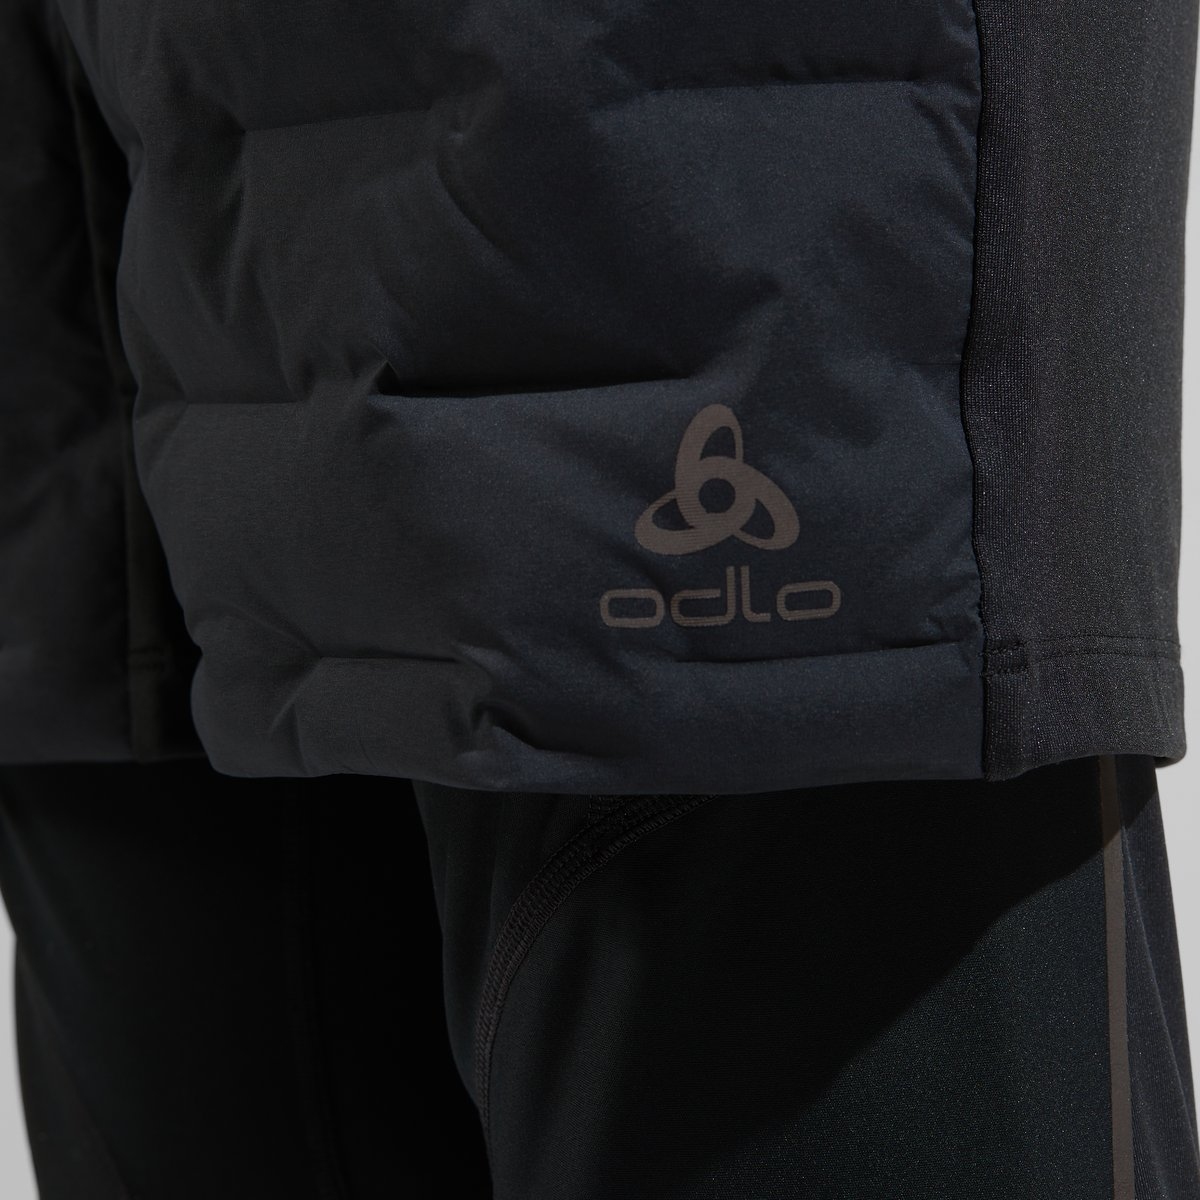 Odlo Seamless Performance Sports Underwear Set Vest Shorts Size S (8-10)  #REF4